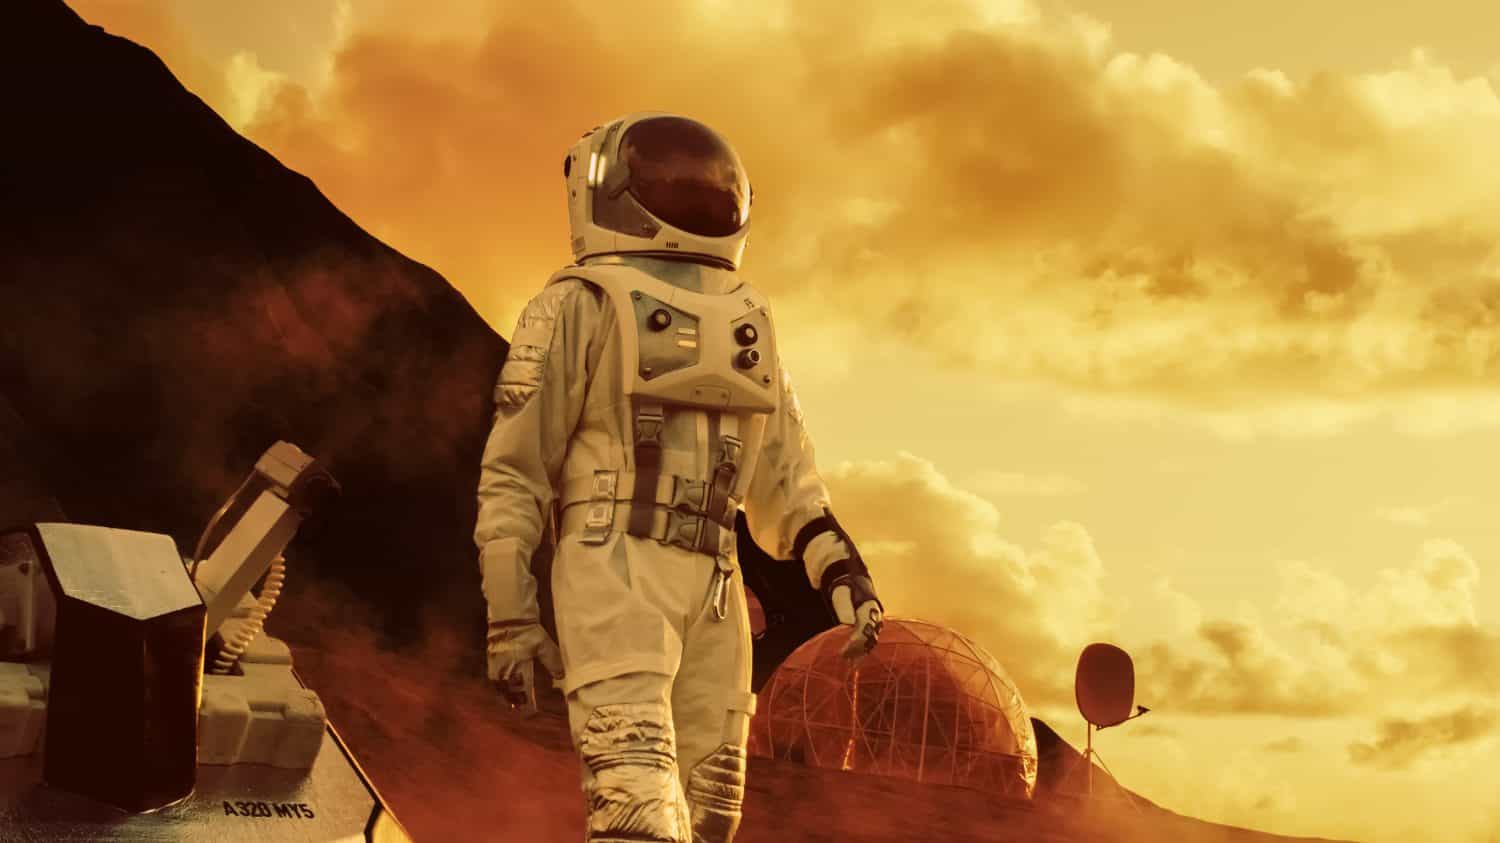 Astronauta su Marte che cammina durante la spedizione esplorativa.  Sullo sfondo la sua base/stazione di ricerca.  Prima missione con equipaggio su Marte, il progresso tecnologico porta all'esplorazione dello spazio e alla colonizzazione.